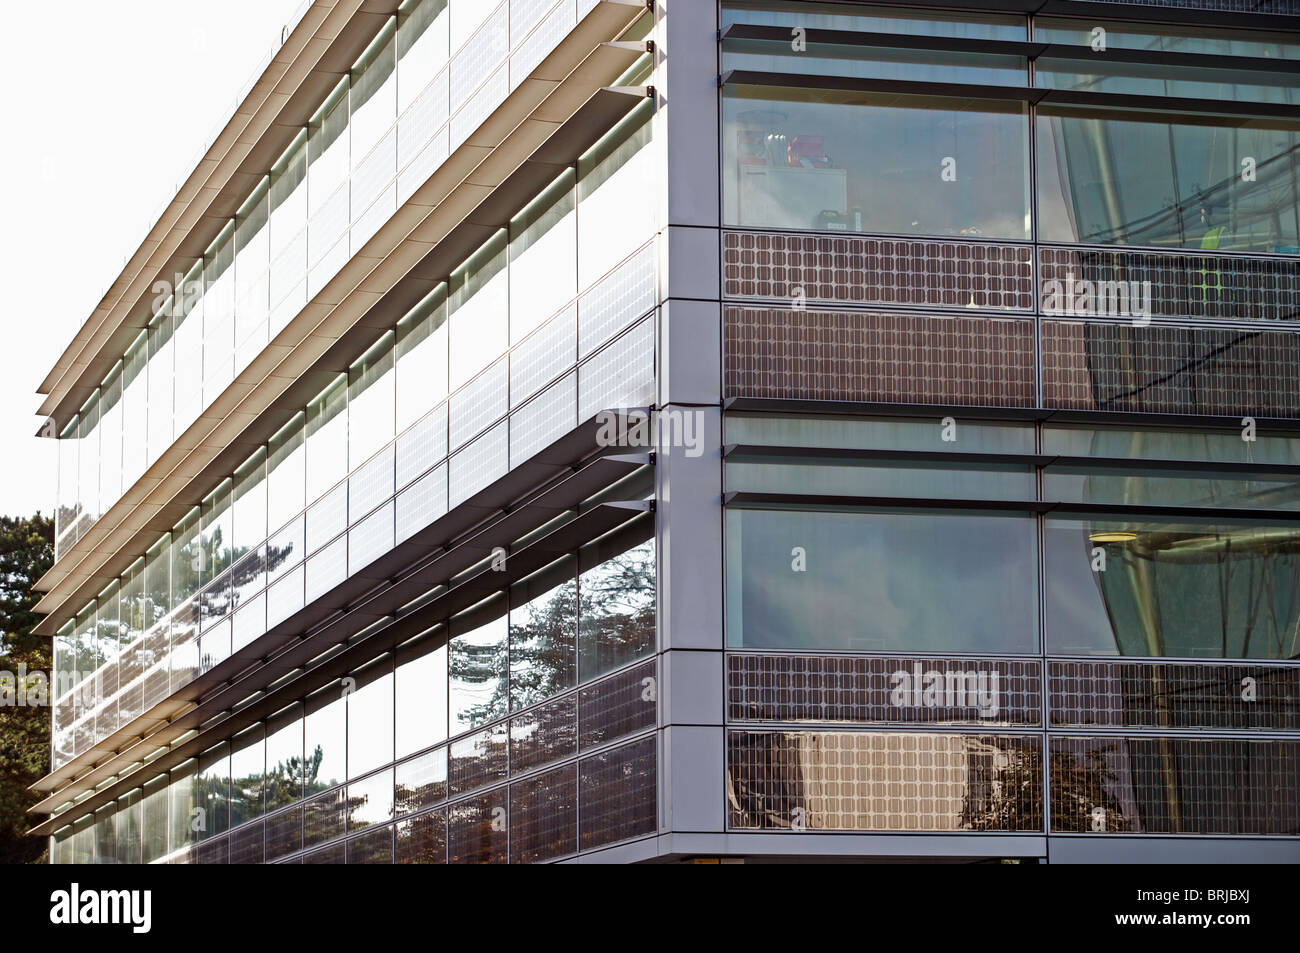 Kommerziellen Bürogebäude mit integrierten Solaranlagen innerhalb der Glasfenster ausgestattet Stockfoto